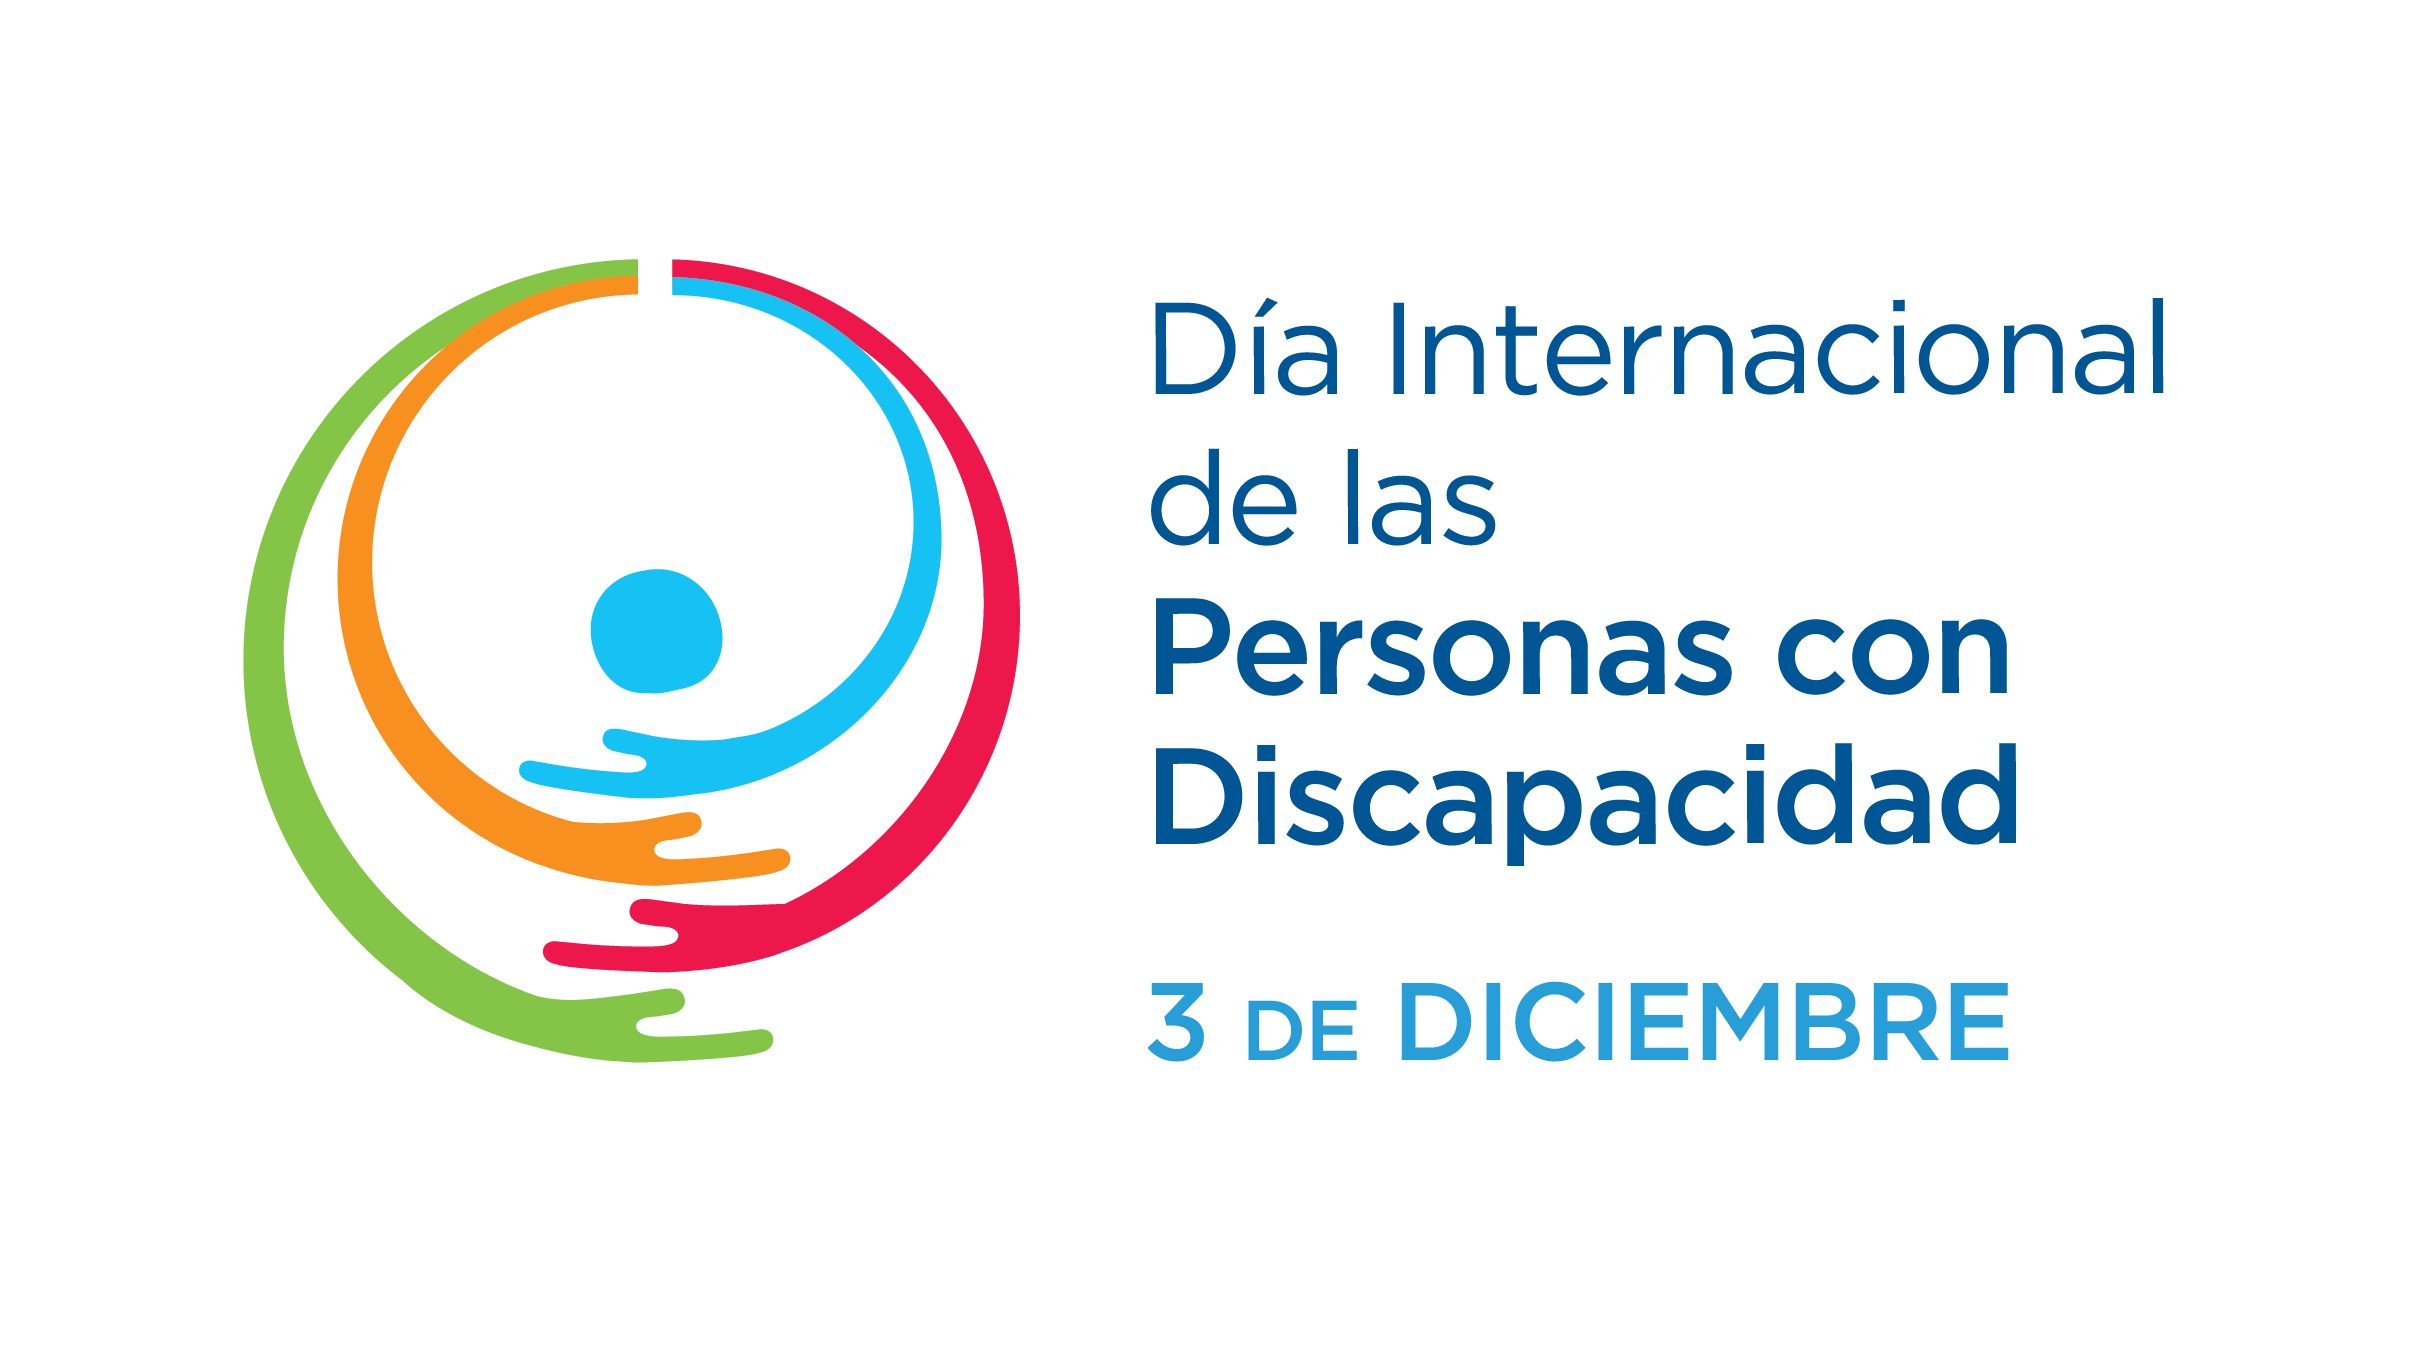 3 de diciembre: día internacional de las personas con discapacidad